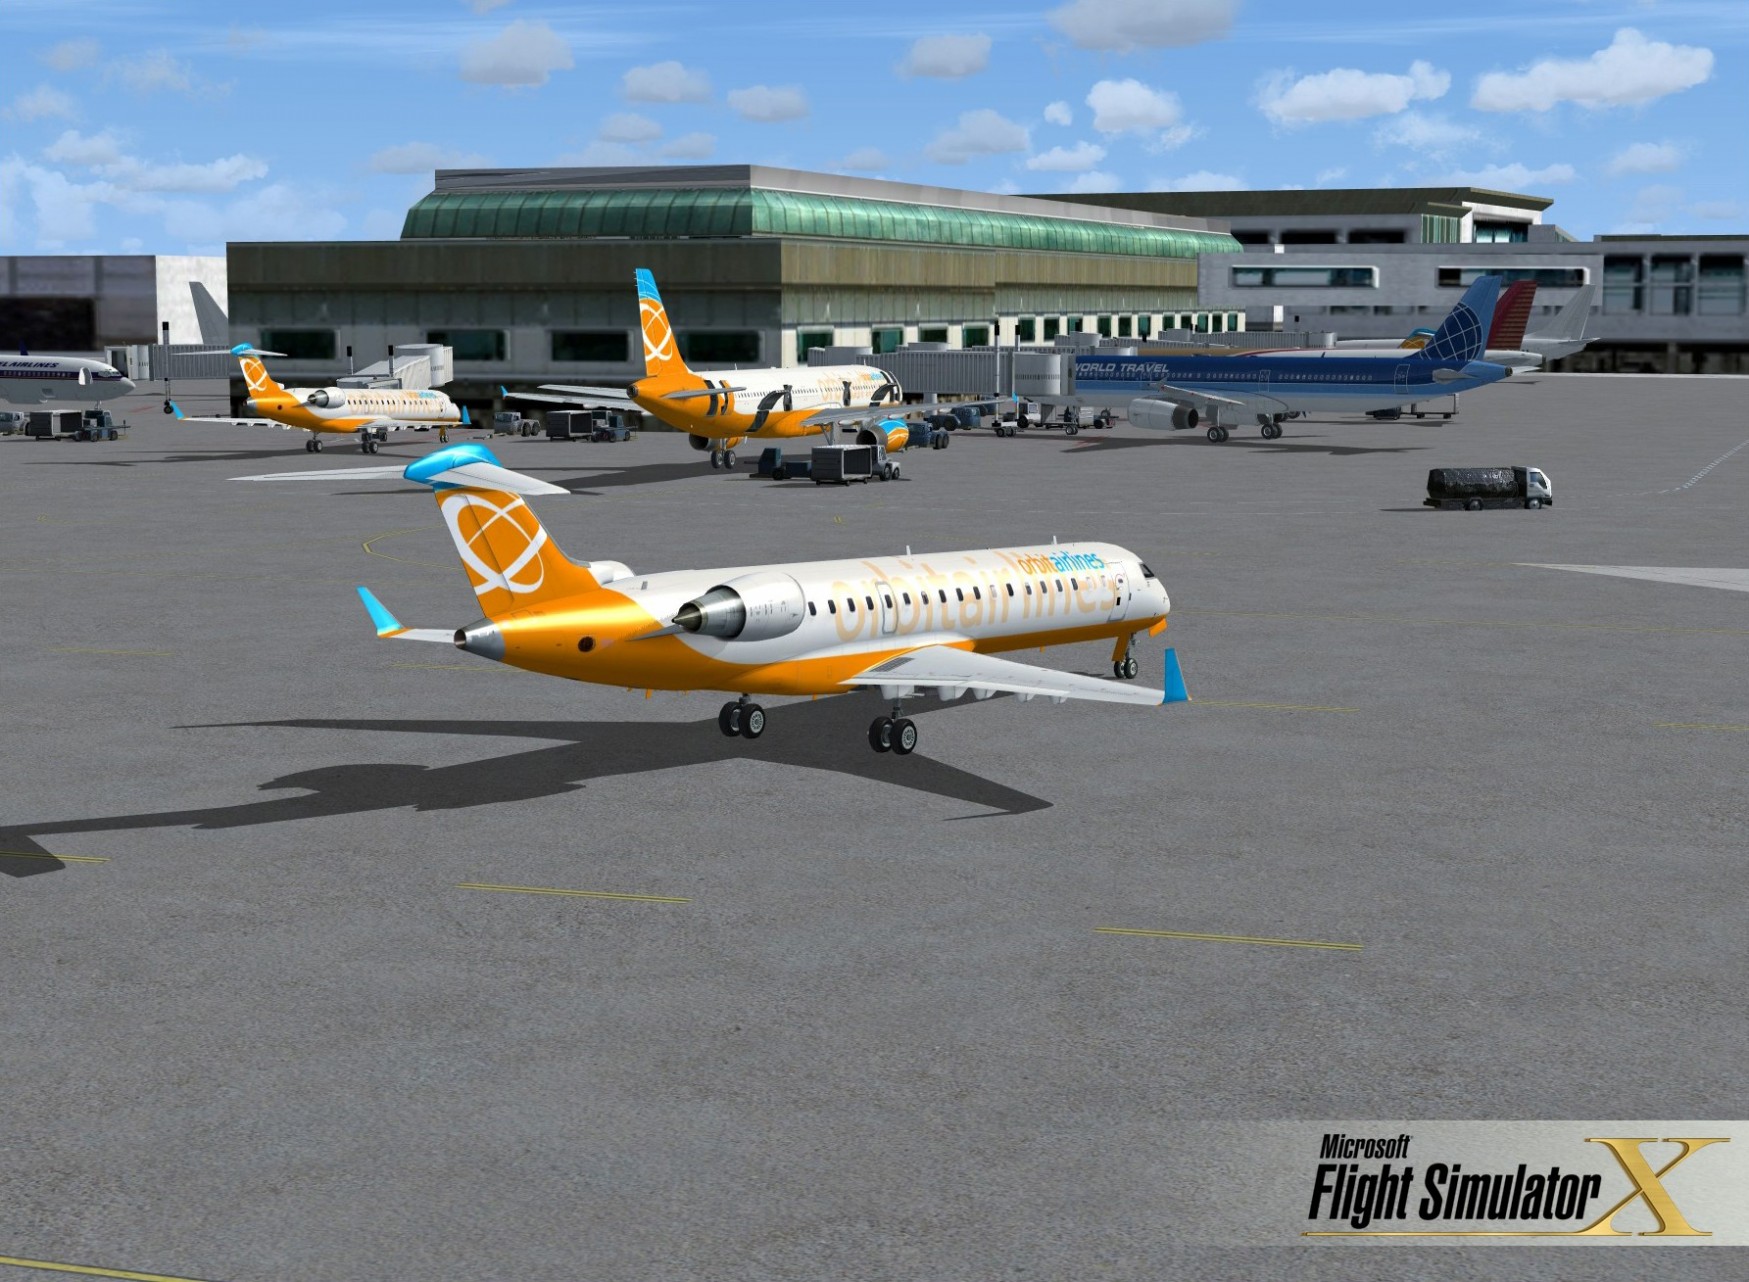 Microsoft flight simulator 2014 free. download full version torrent